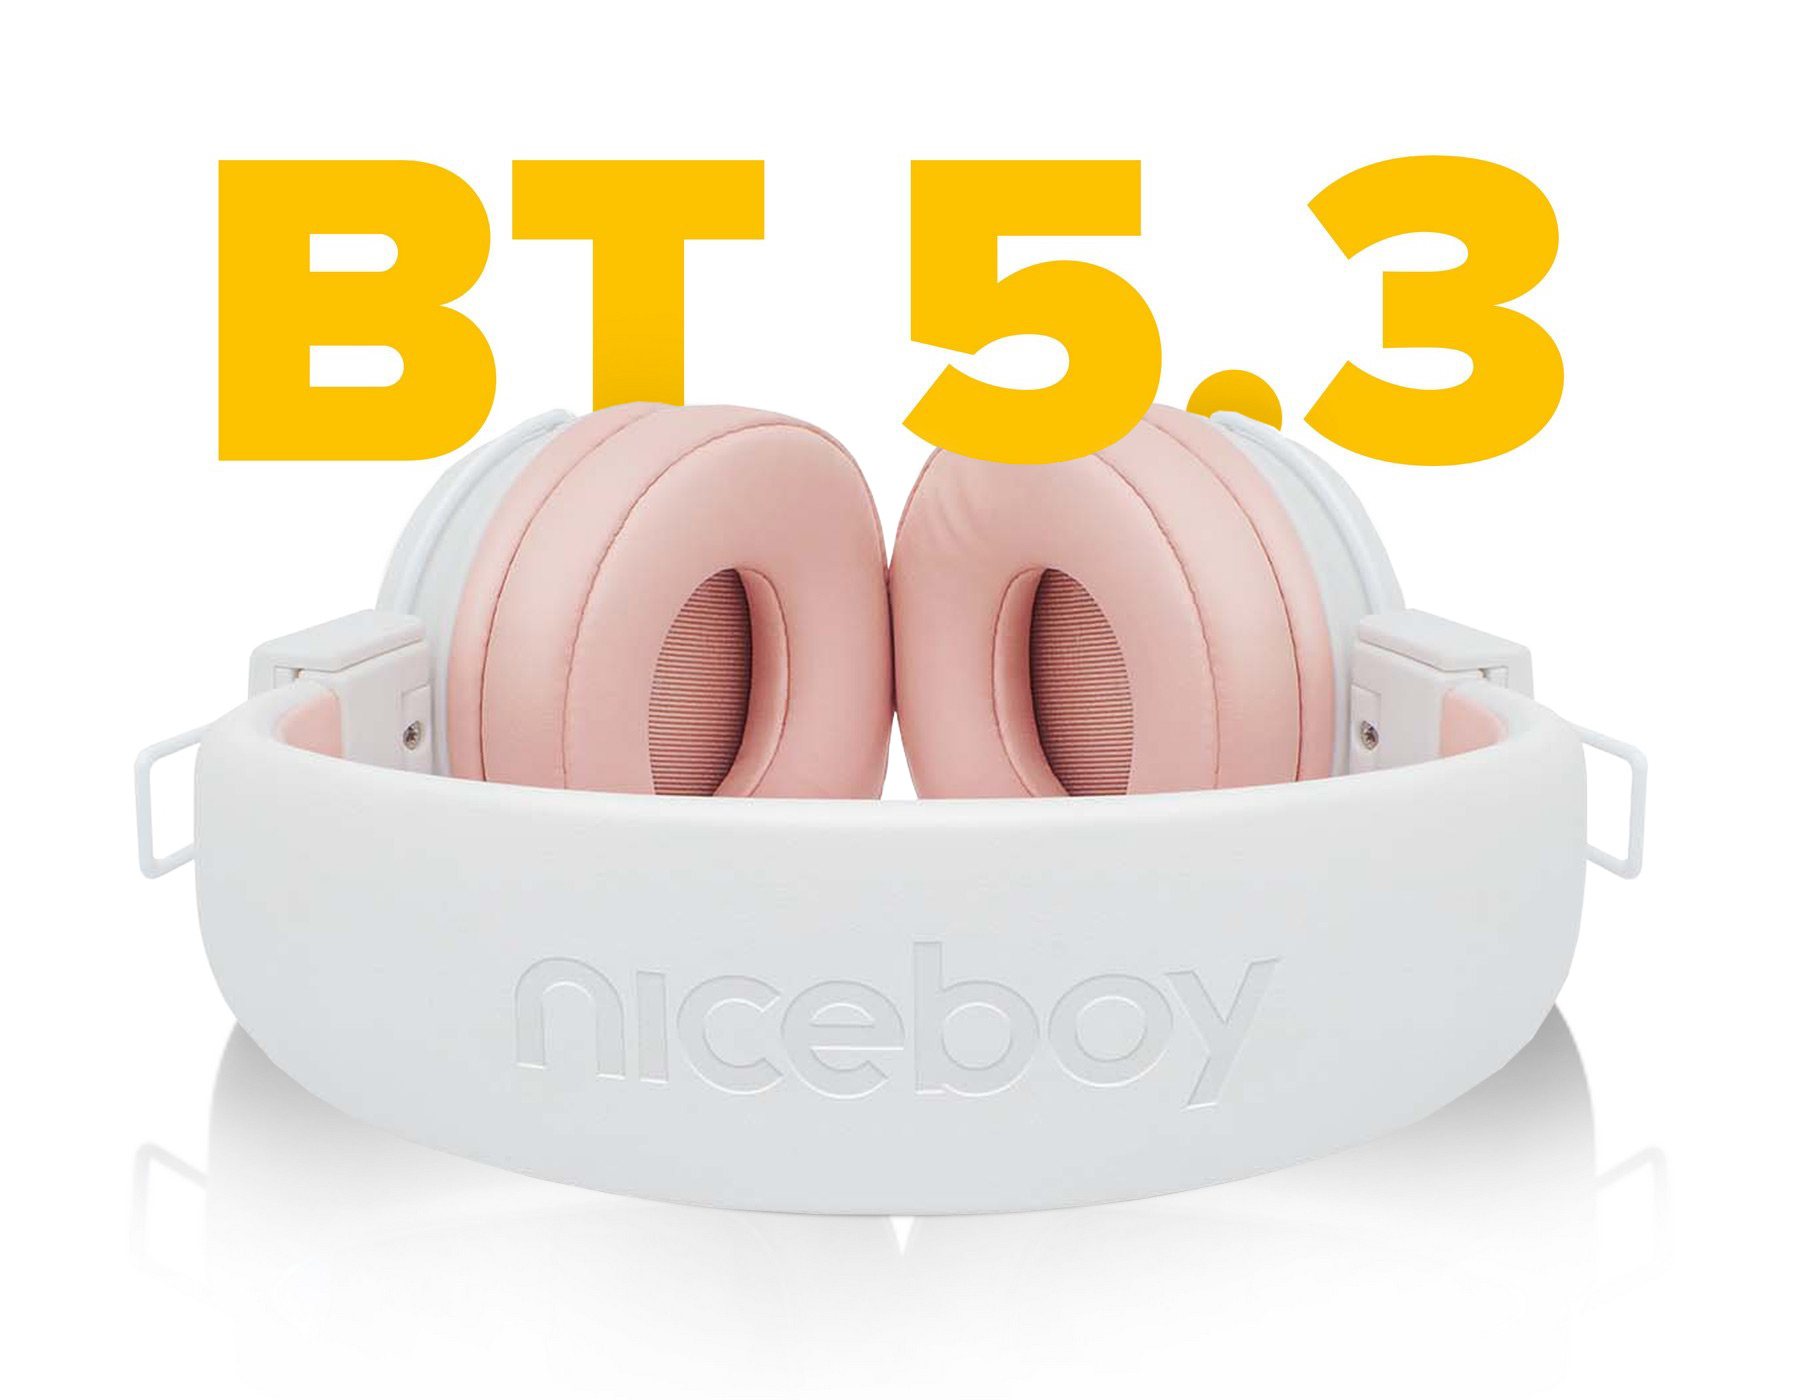 Sluchátka Niceboy Hive Joy 3 Sakura podporují kodeky SBC a AAC a k bezdrátovému poslechu využívají technologii Bluetooth 5.3 s automatickým párováním.